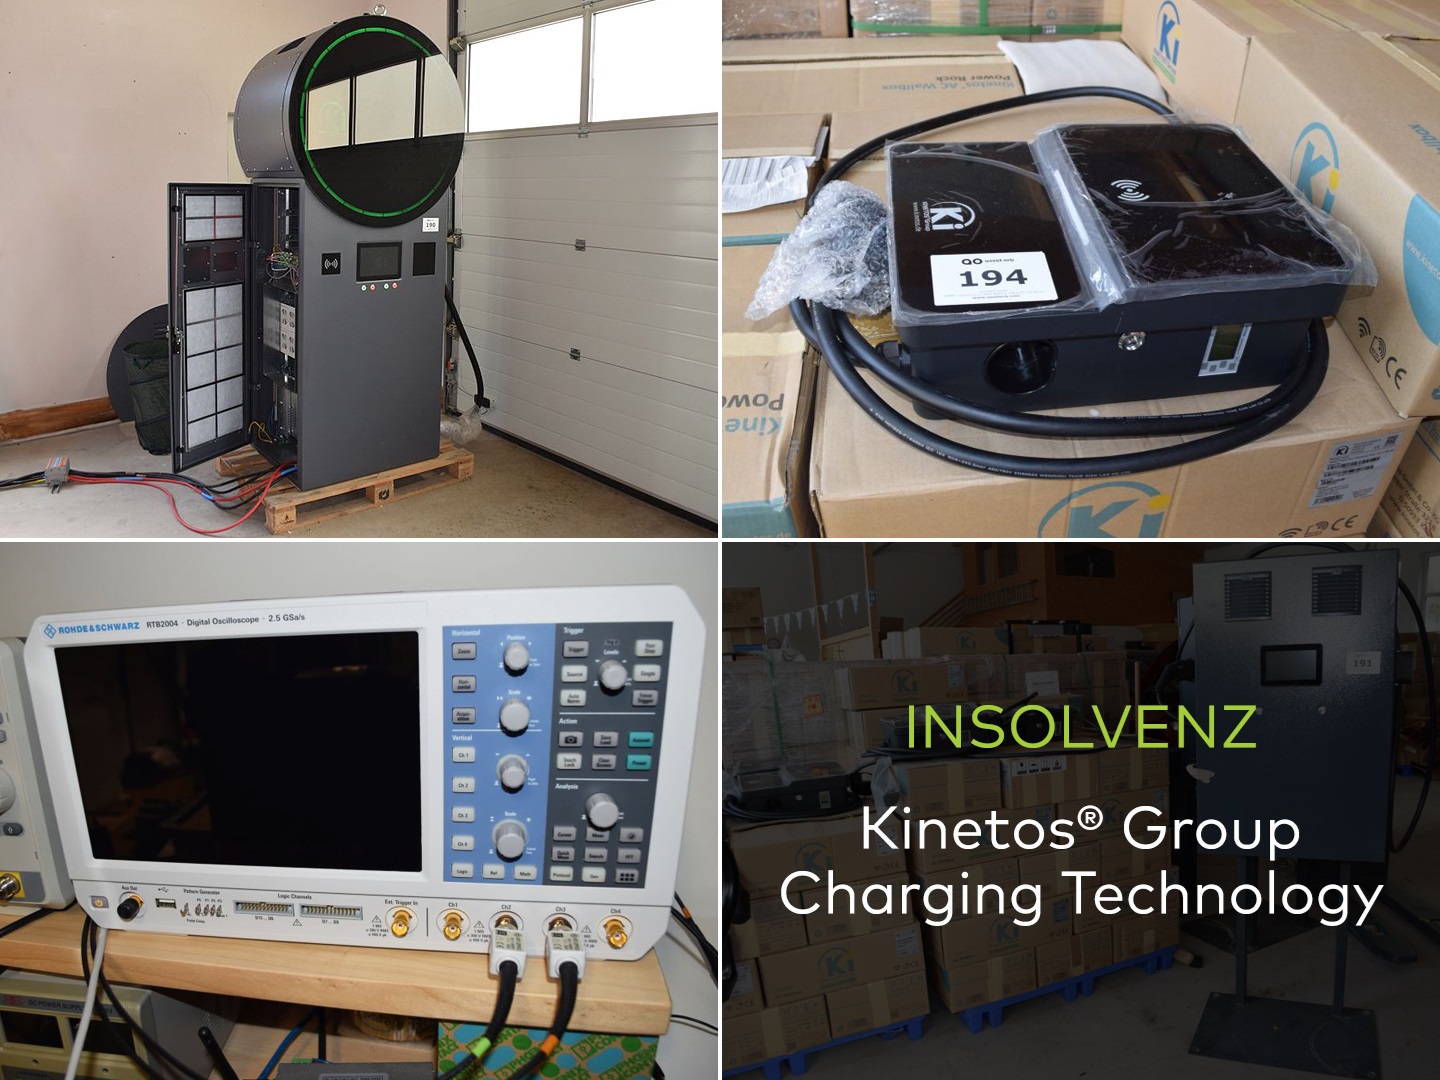 Betriebsausstattung aus Insolvenz der Kinetos® Group - Charging Technology